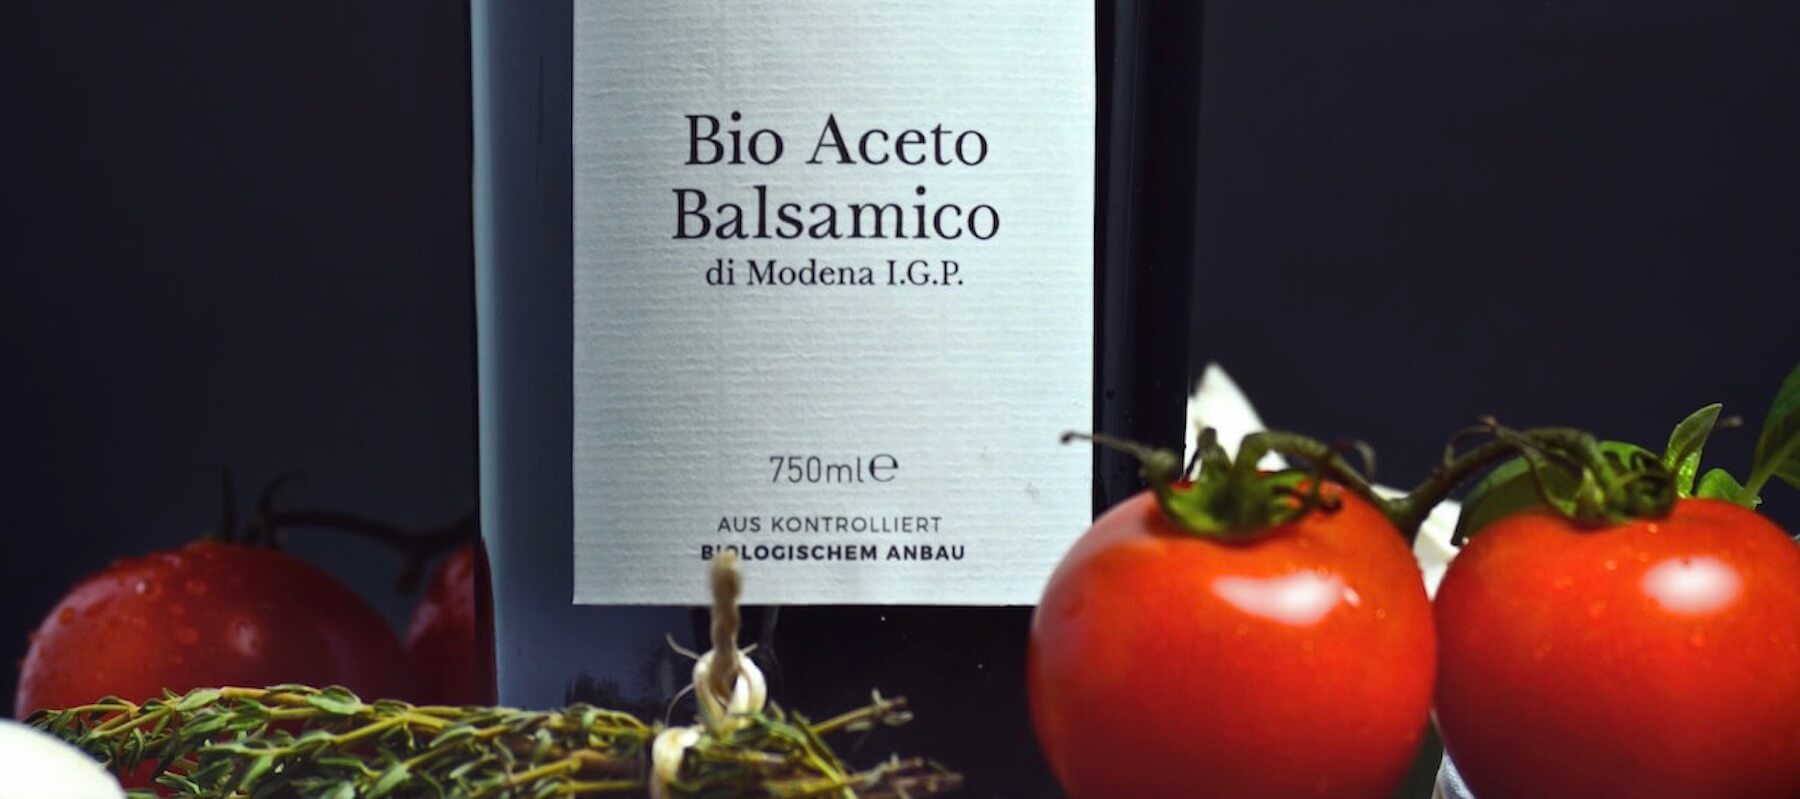 Aceto Balsamico Delidia Flasche mit Tomate